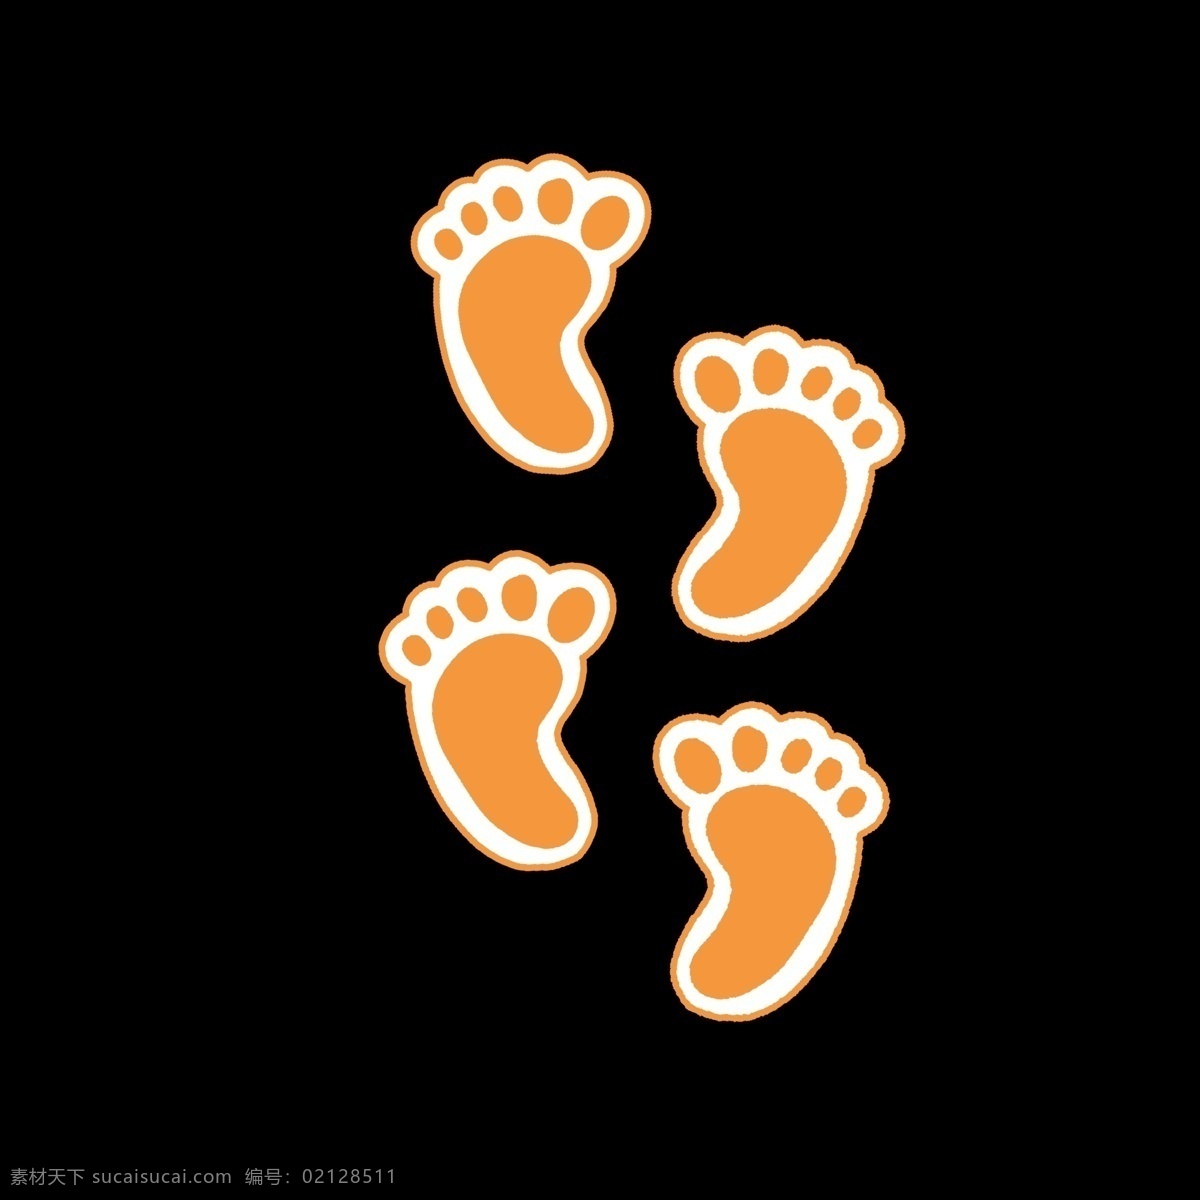 橙色 小 宝贝 脚印 暖色 黄色 小宝贝脚丫子 痕迹 脚丫子 脚丫形状 卡通 简单 简约 简洁 动物脚 几何形状